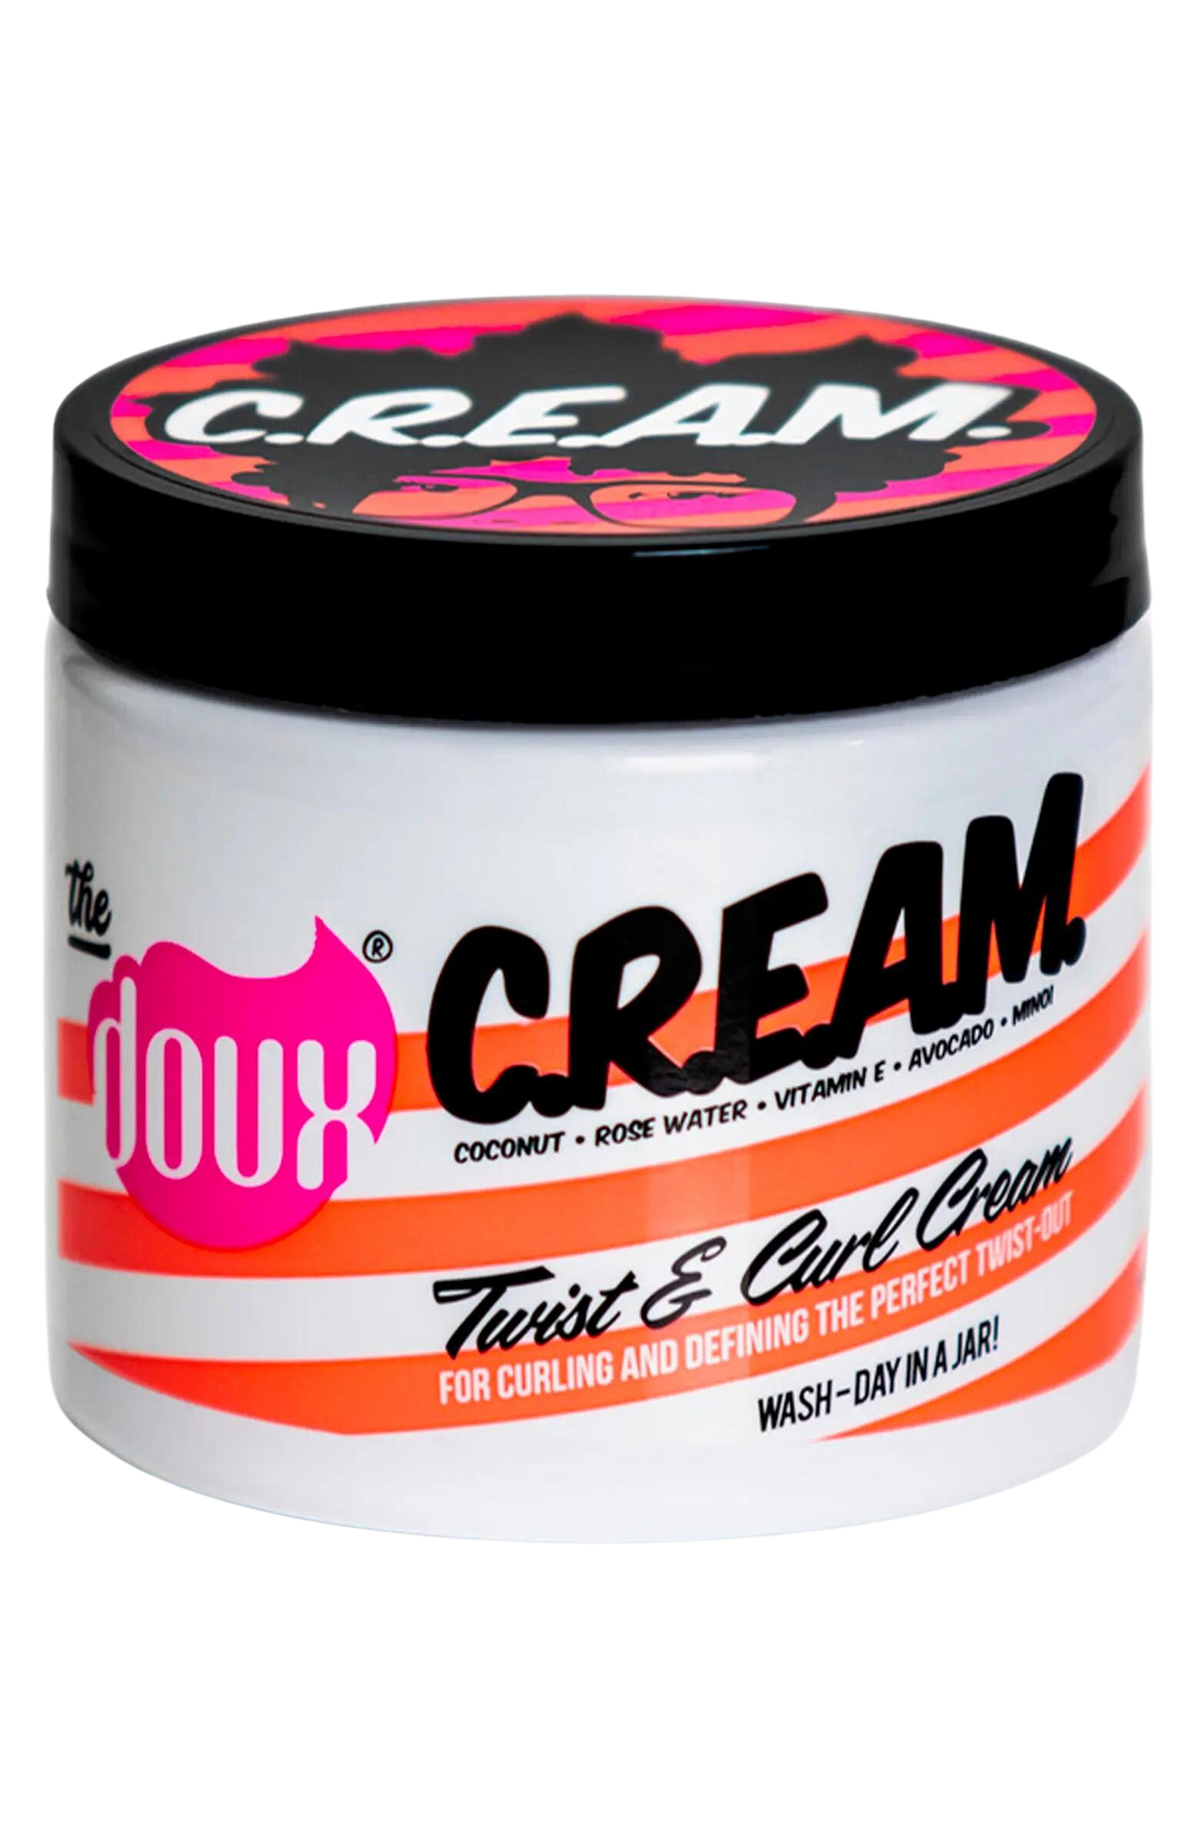 The Doux C.R.E.A.M. Twist And Curl Cream 16oz